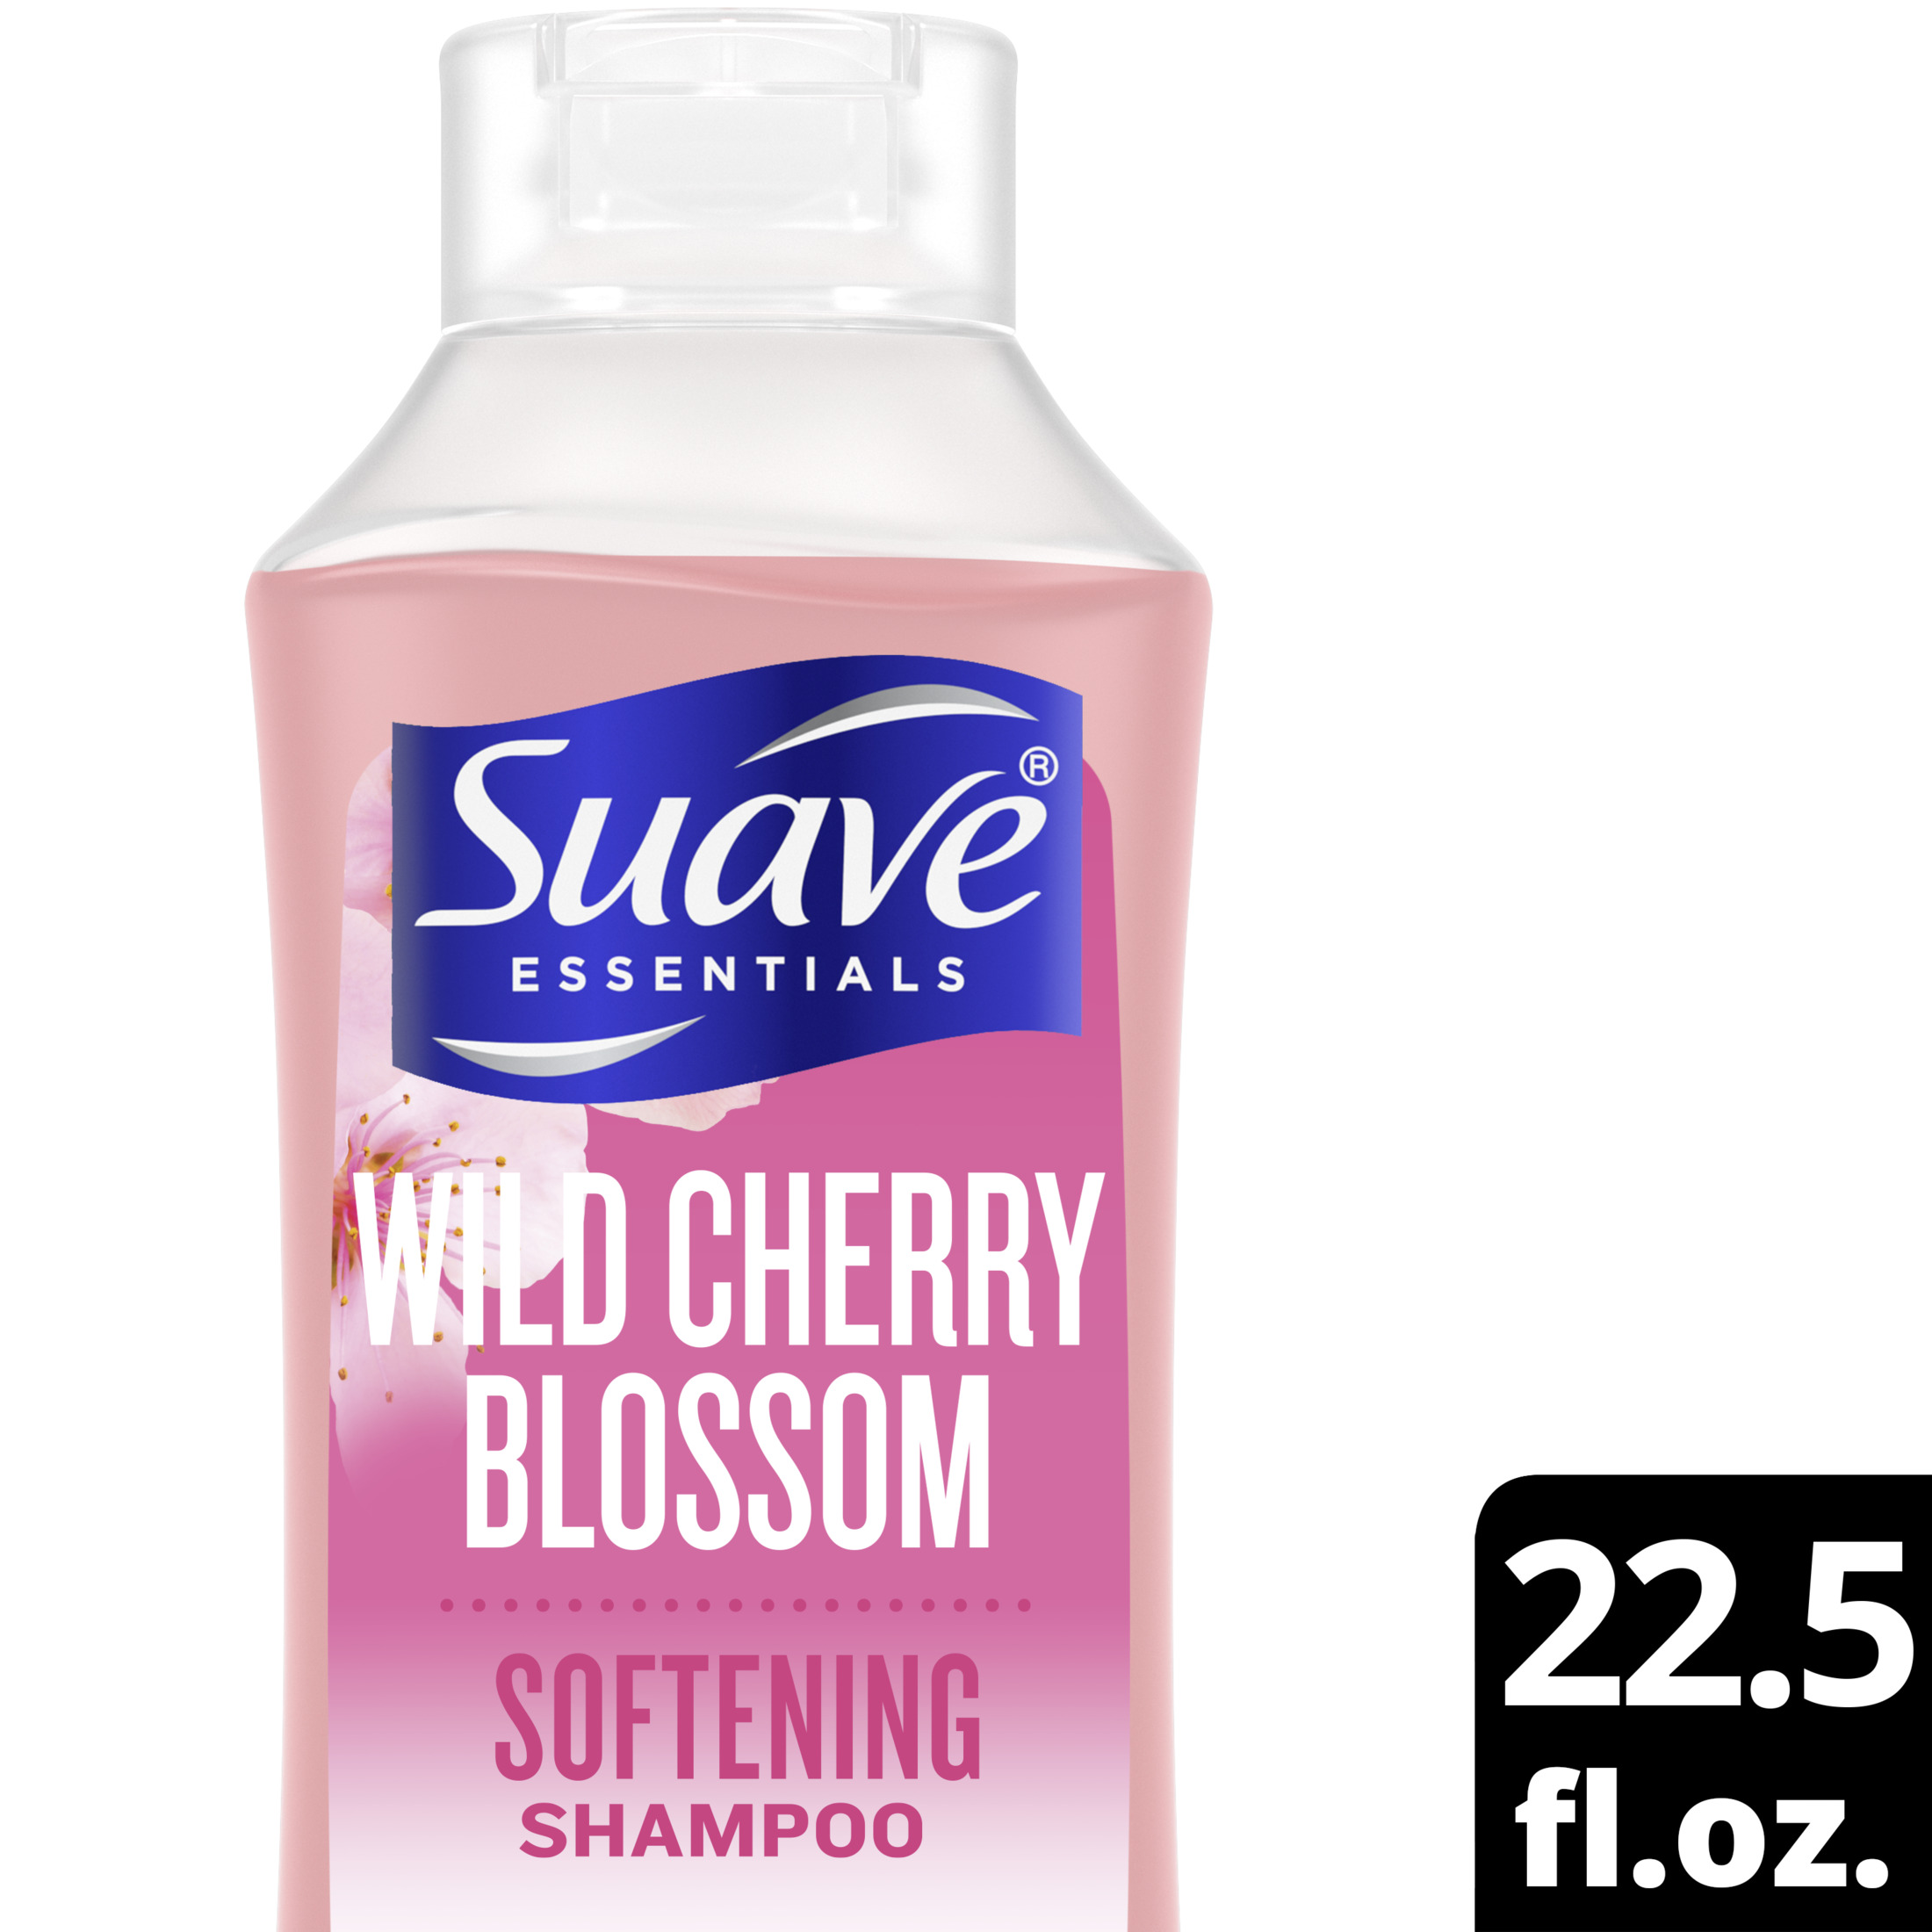 Suave Essentials Softening Shampoo, Wild Cherry Blossom, 22.5 fl oz - image 1 of 10